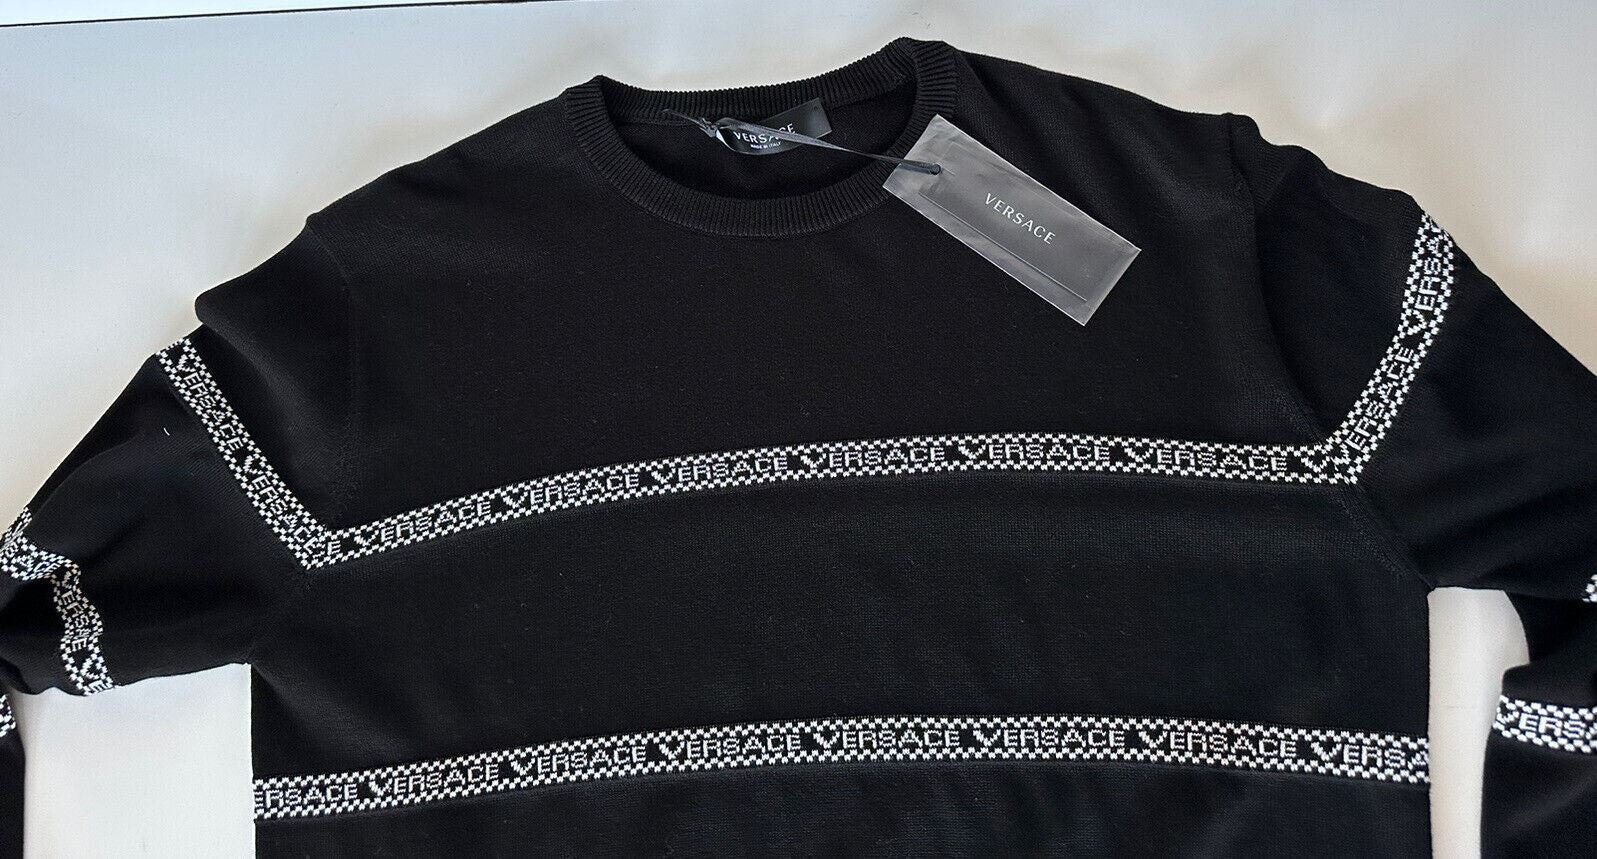 СЗТ $850 Versace Logo Хлопковый вязаный свитер Черный 54 (2XL) Италия A89468S